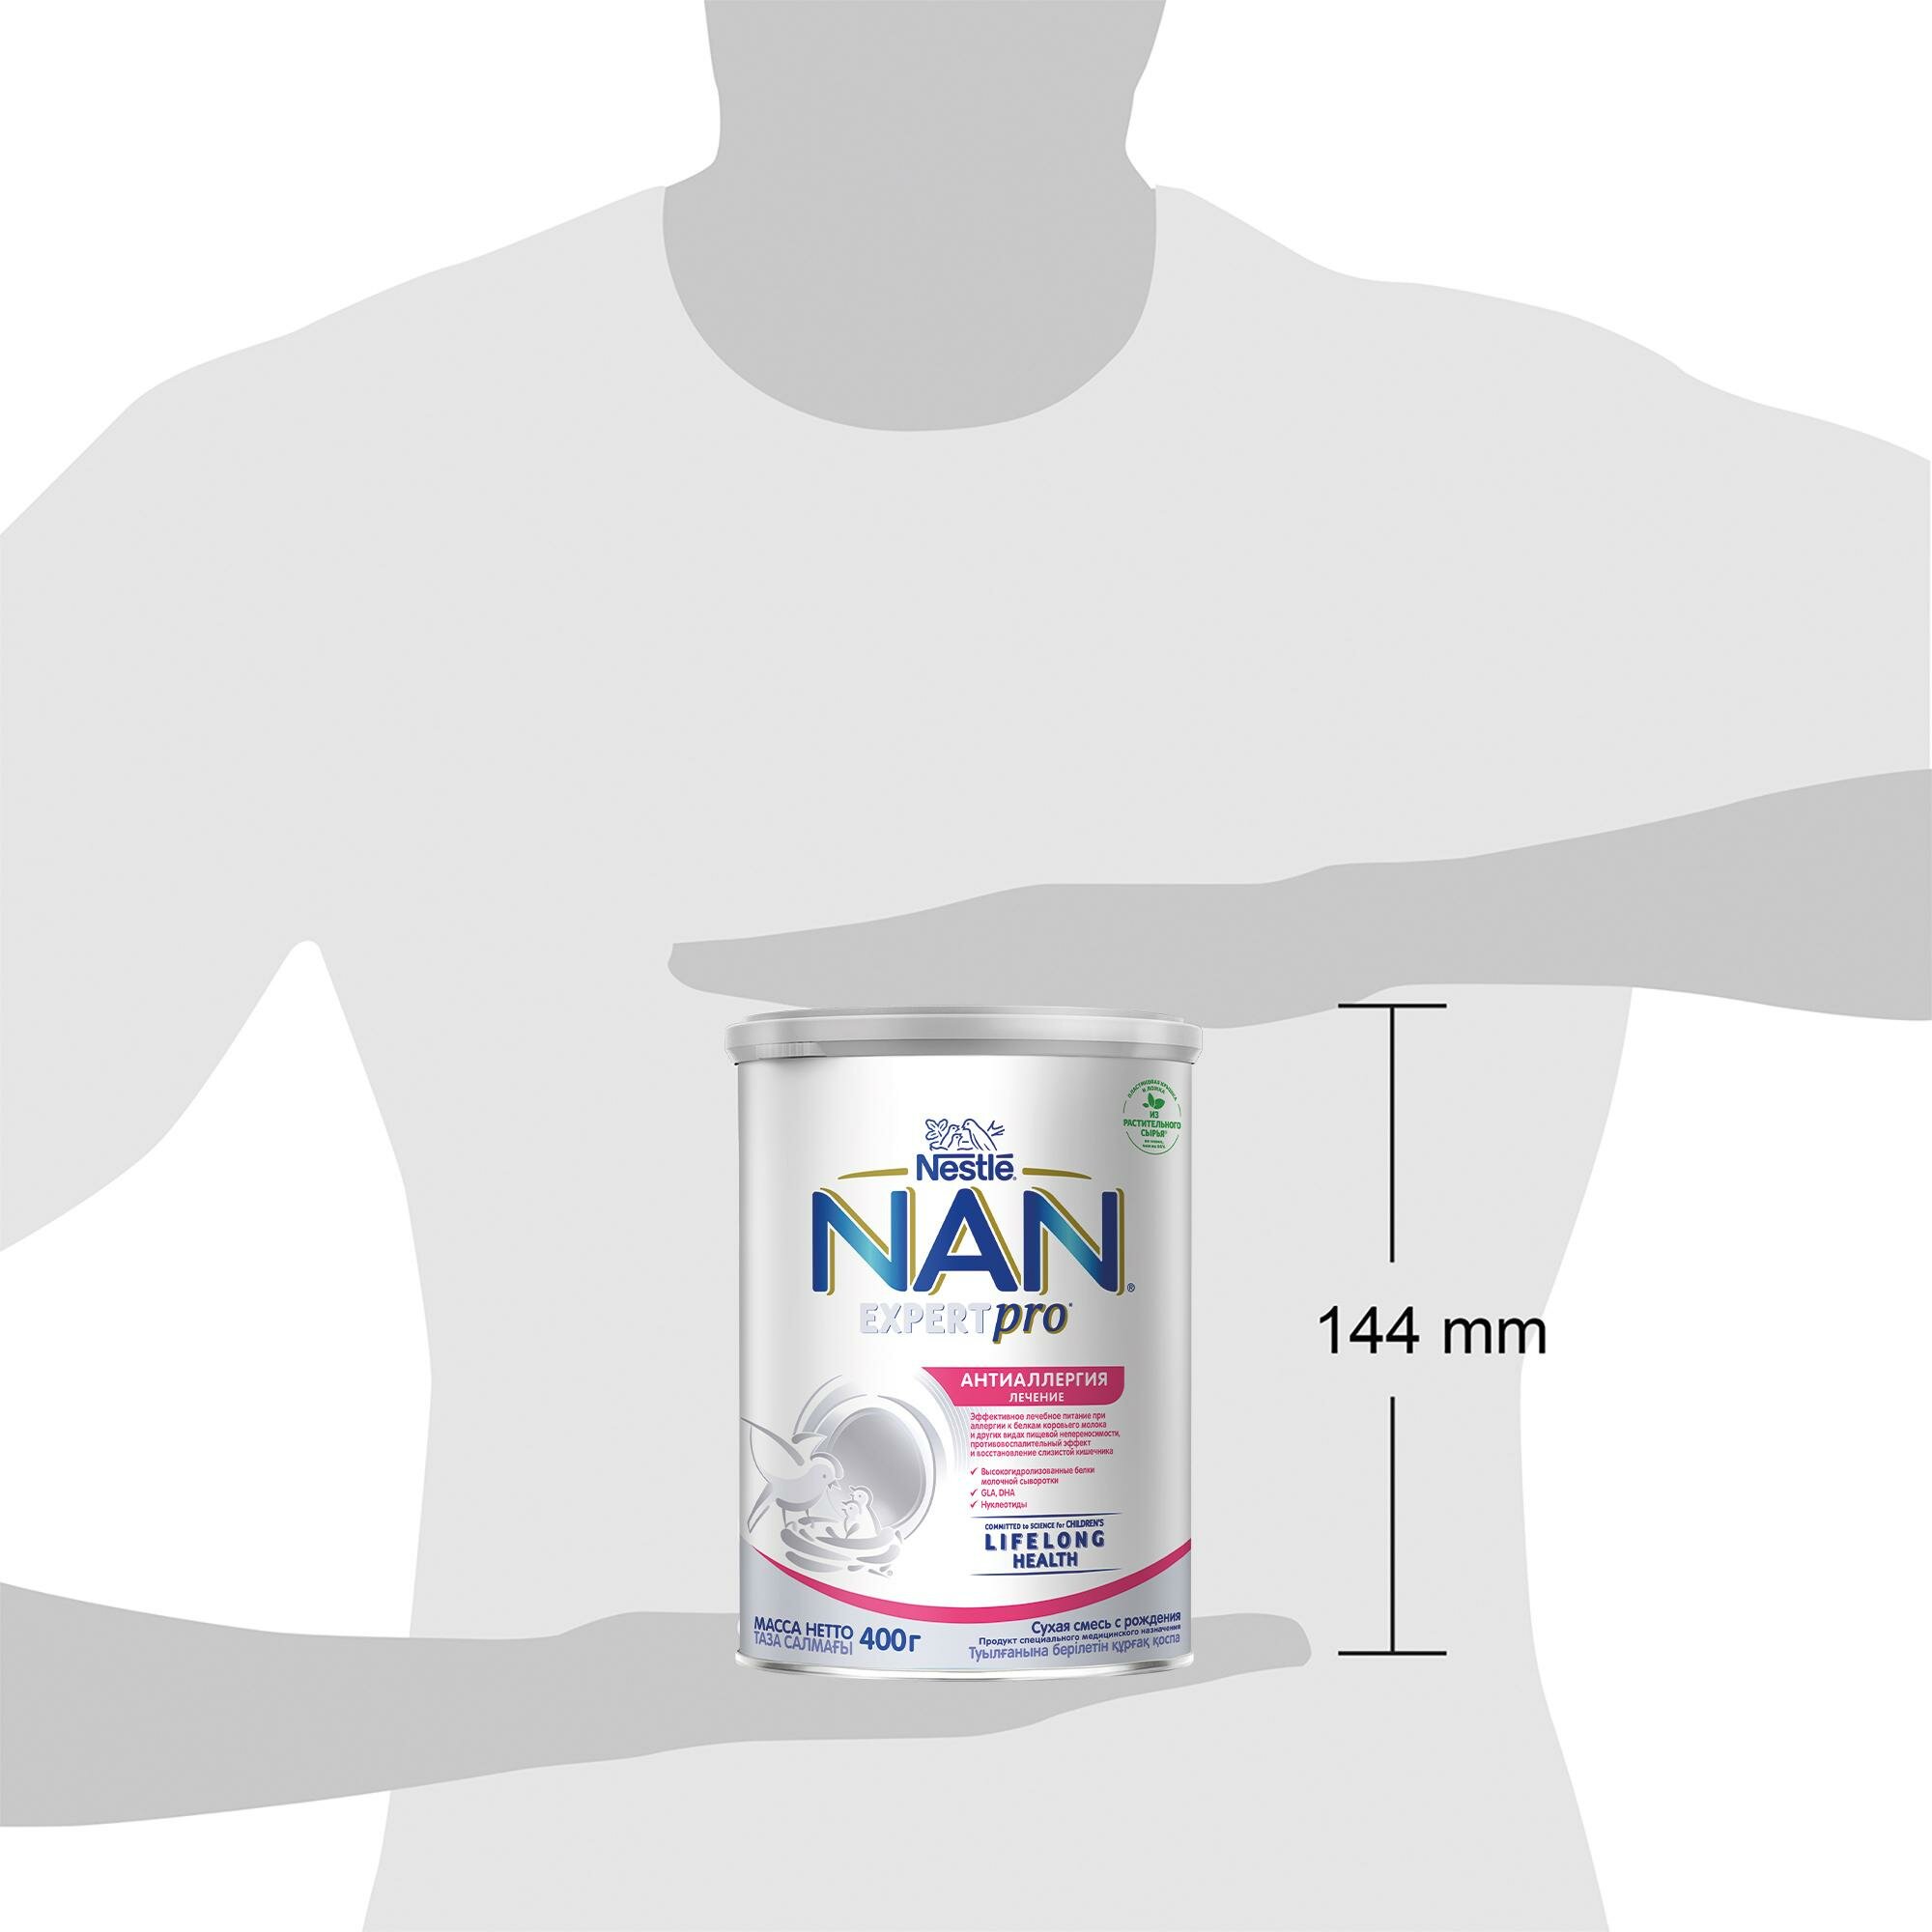 NAN® ExpertPro Allergy Сухая молочная смесь для лечения аллергии с рождения, 400гр - фото №15